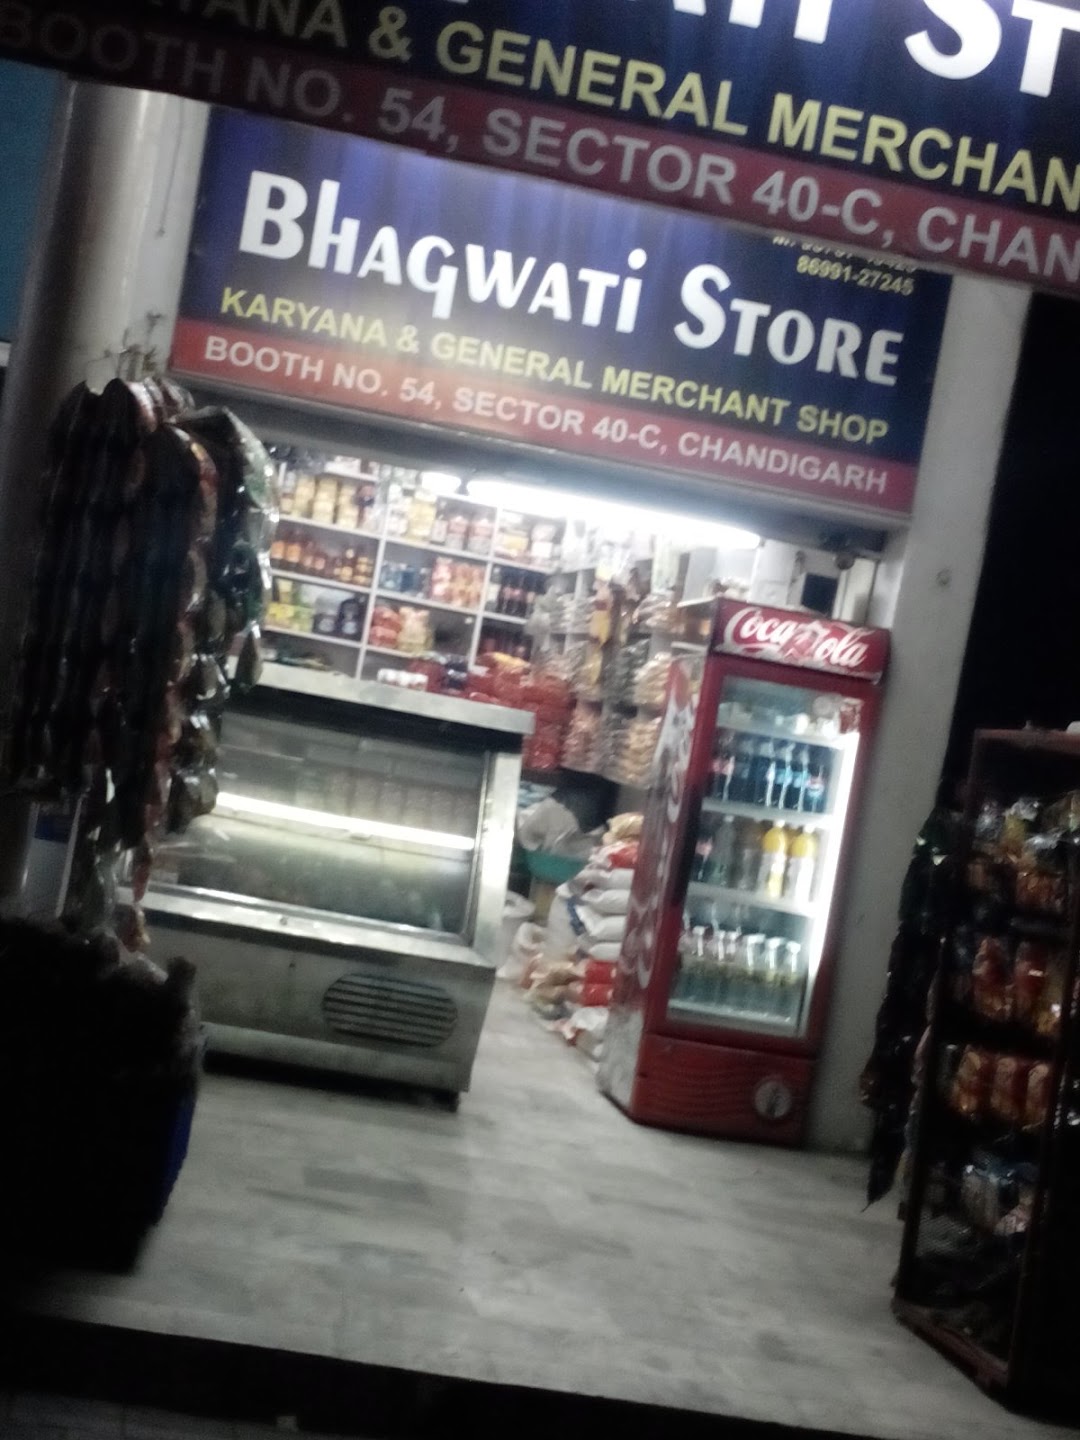 Bhagwati Store